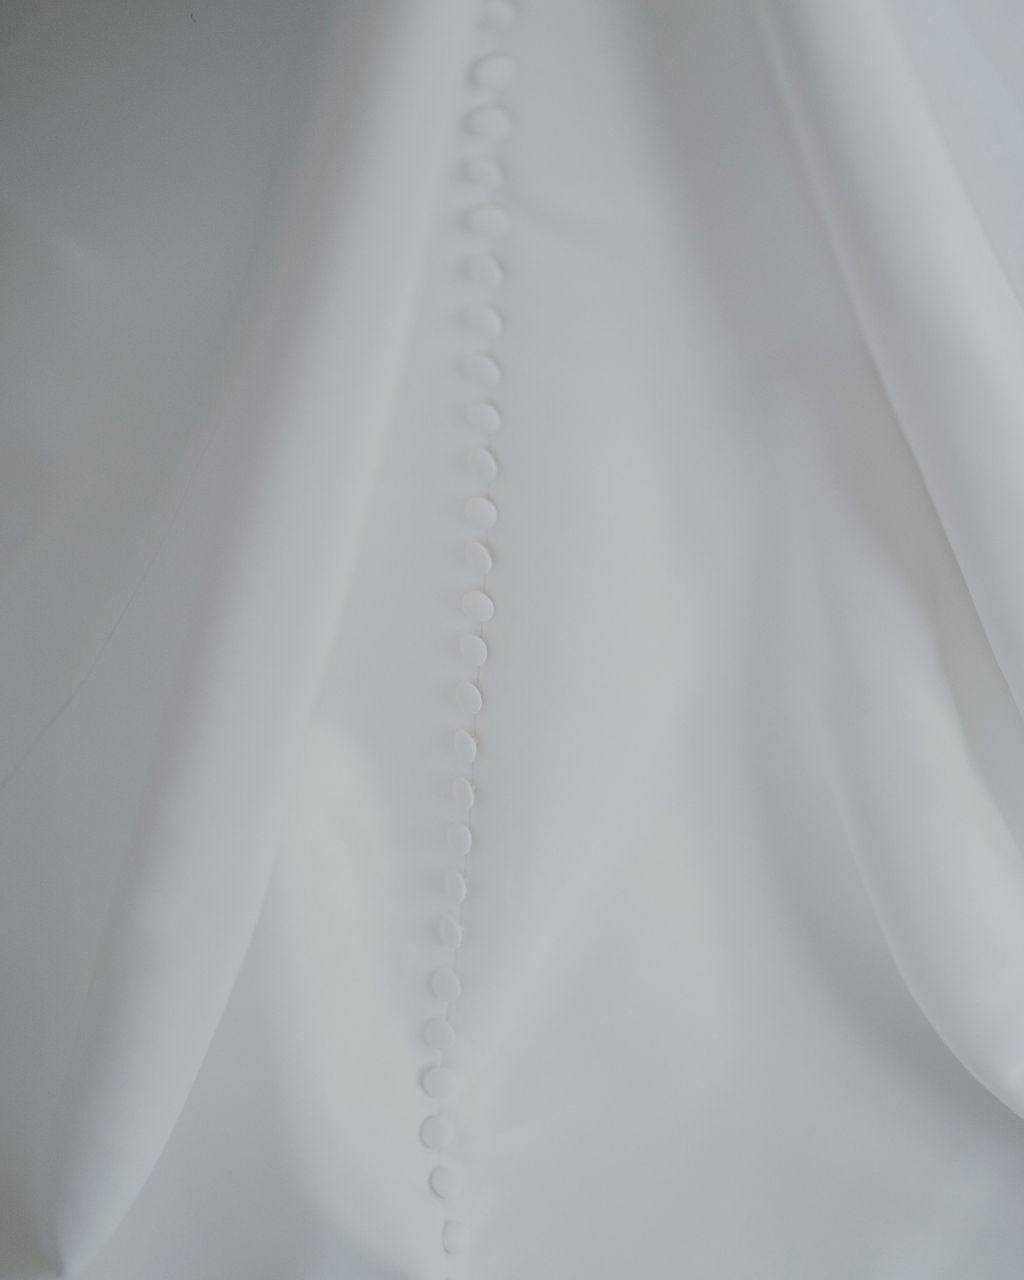 Serena *échantillon taille 10* - robe de mariée minimaliste et contemporaine coupe ajustée en crêpe à bustier